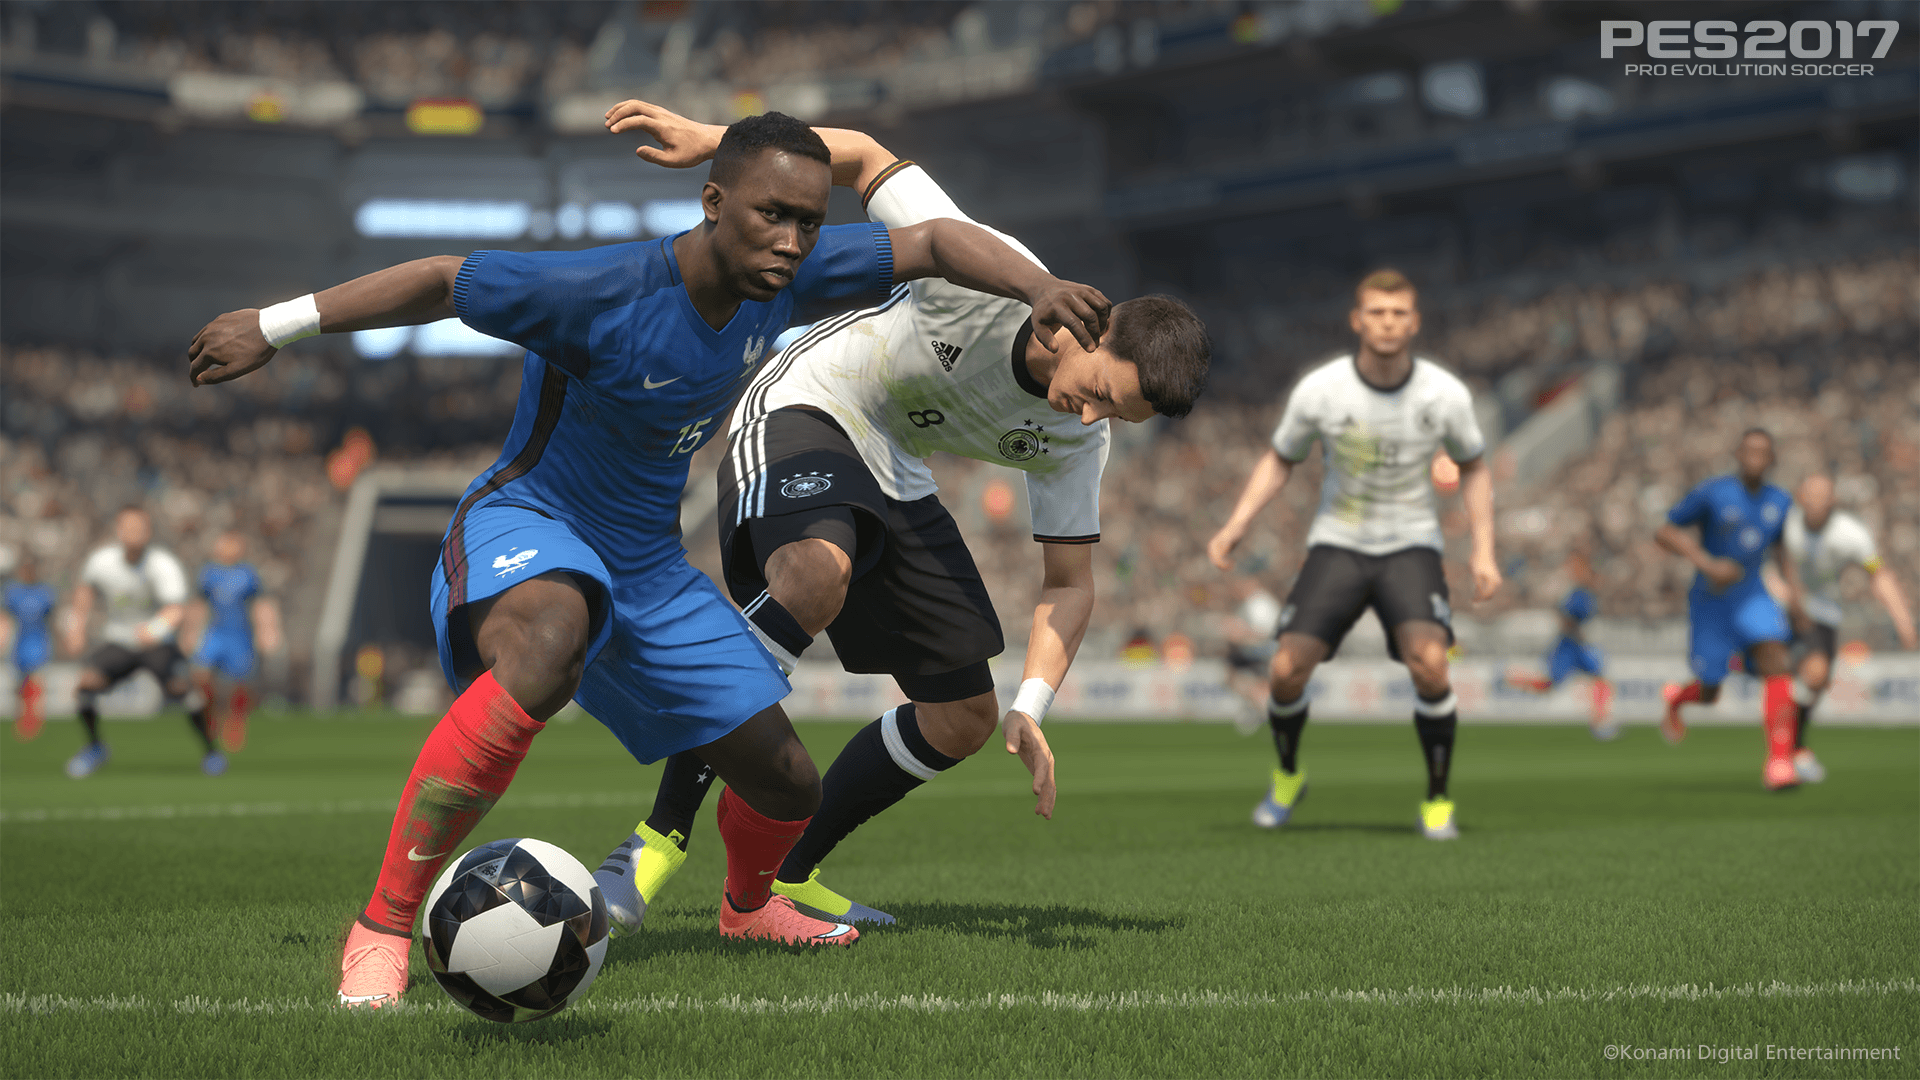 Pro Evolution Soccer 2017 vs FIFA 17: What's the best football